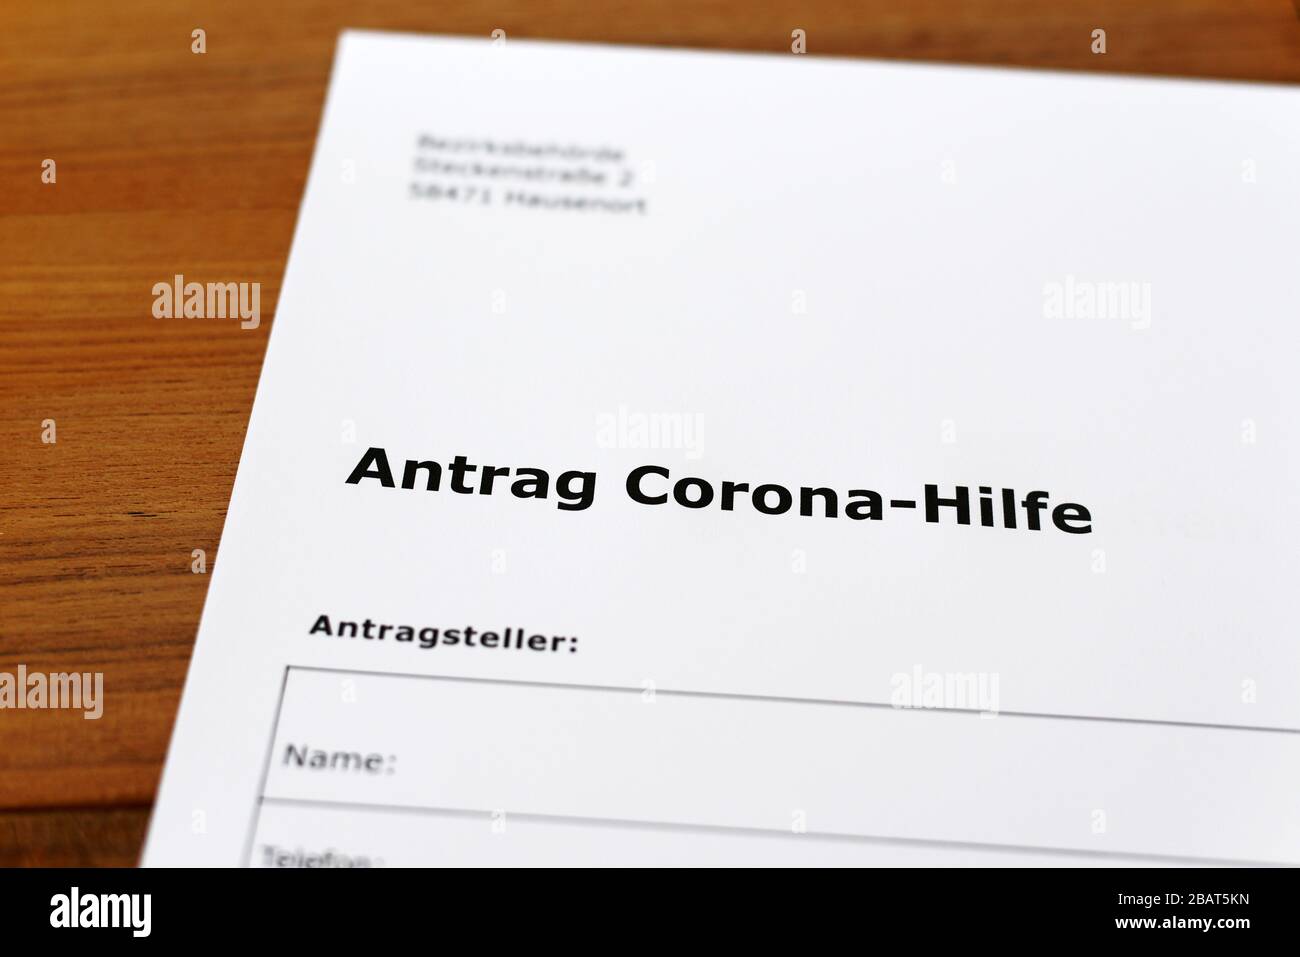 Una hoja de papel con las palabras alemanas 'Antrag Corona-Hilfe' - Traducción en englisch: Solicitud de ayuda Corona. Foto de stock